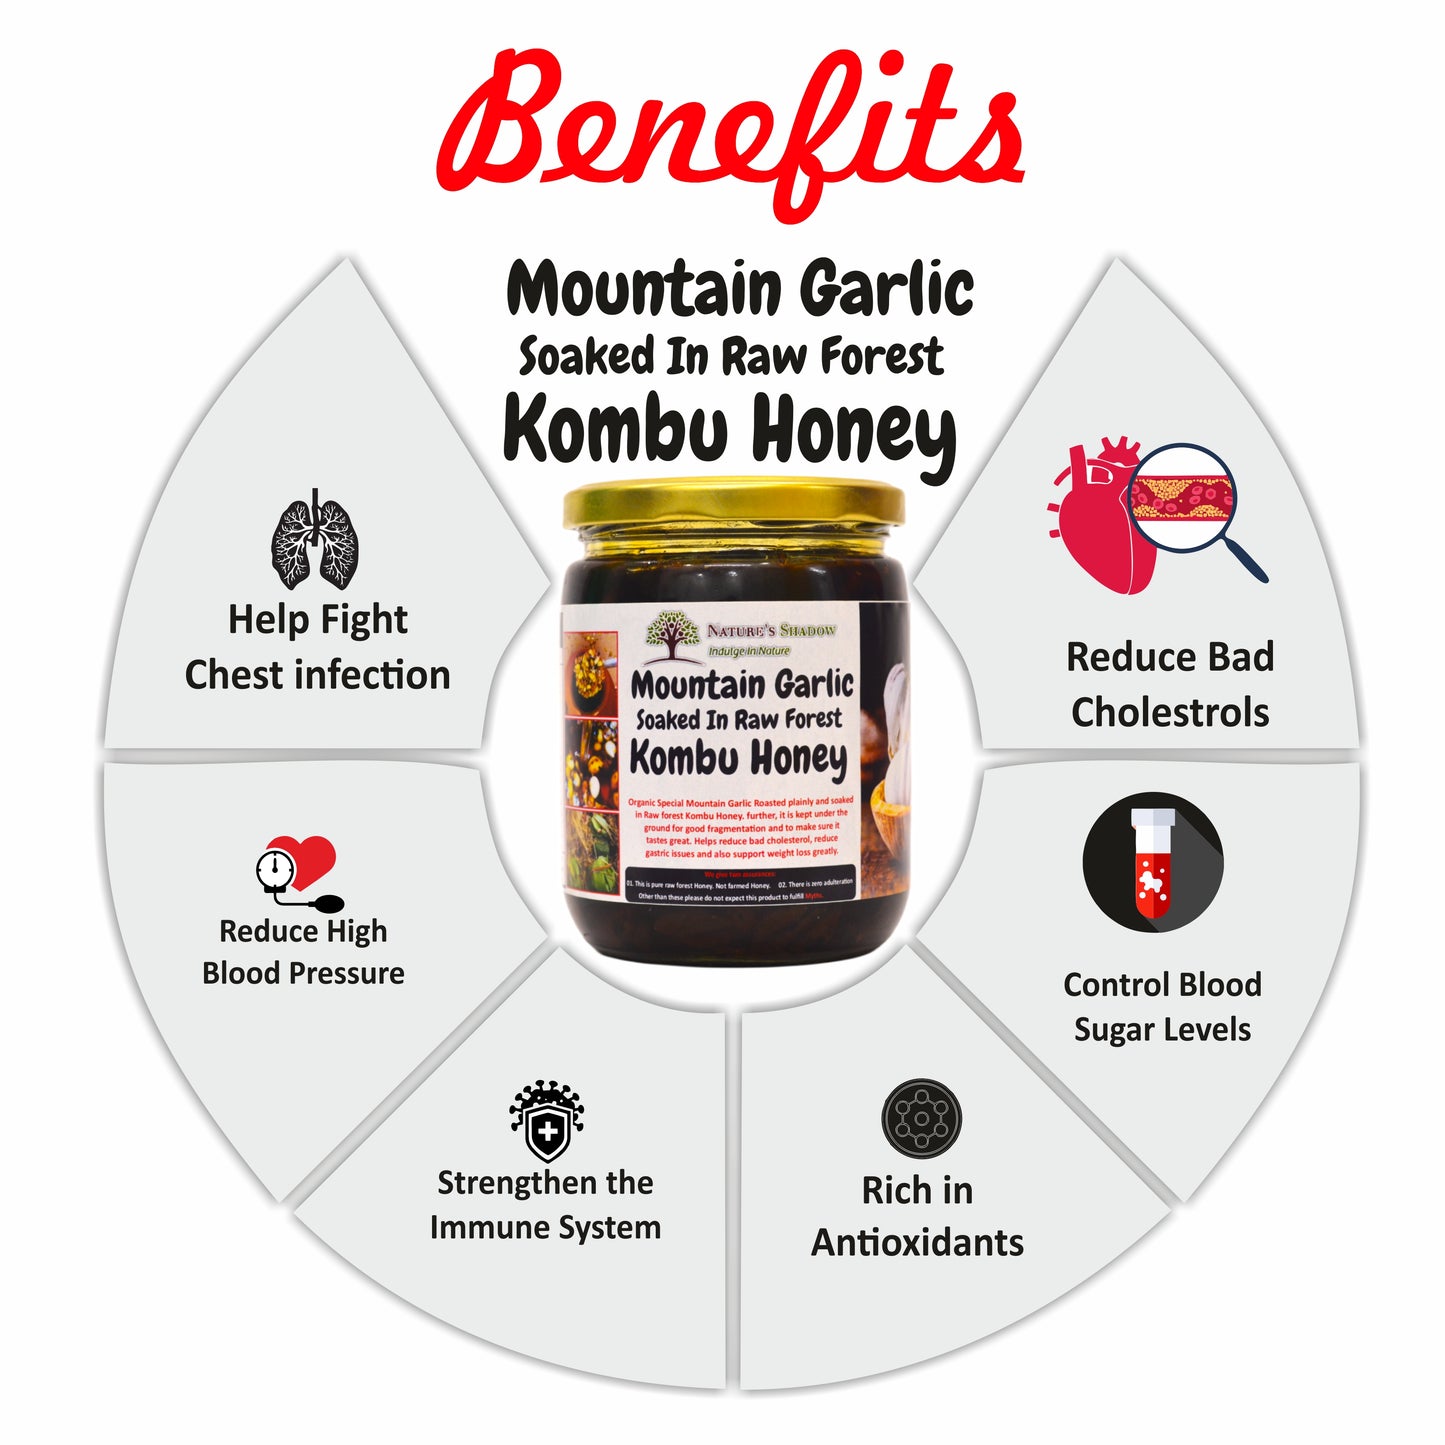 Mountain Garlic Soaked In Kombu Honey